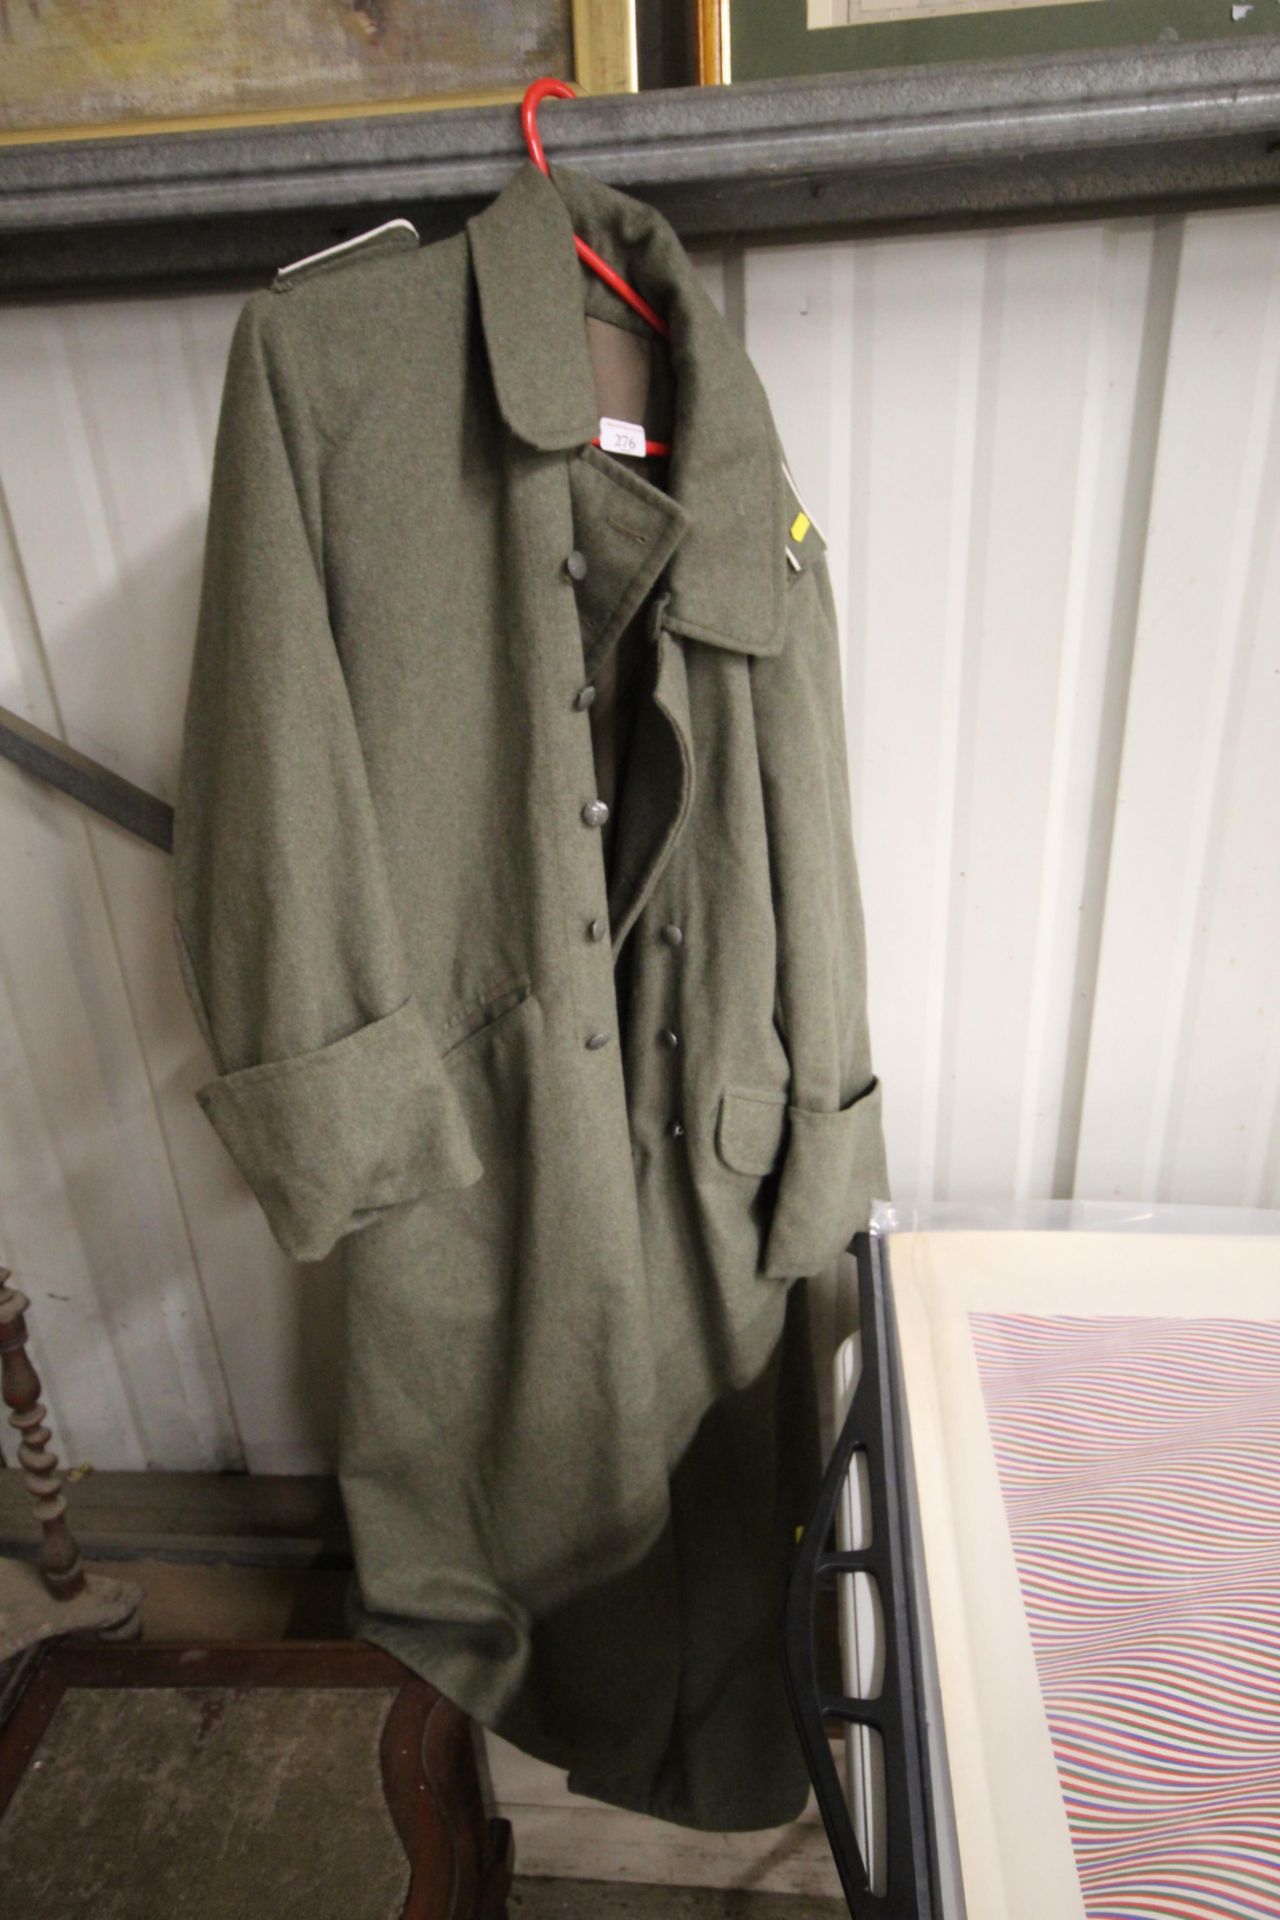 A German WW2 pattern soldiers coat